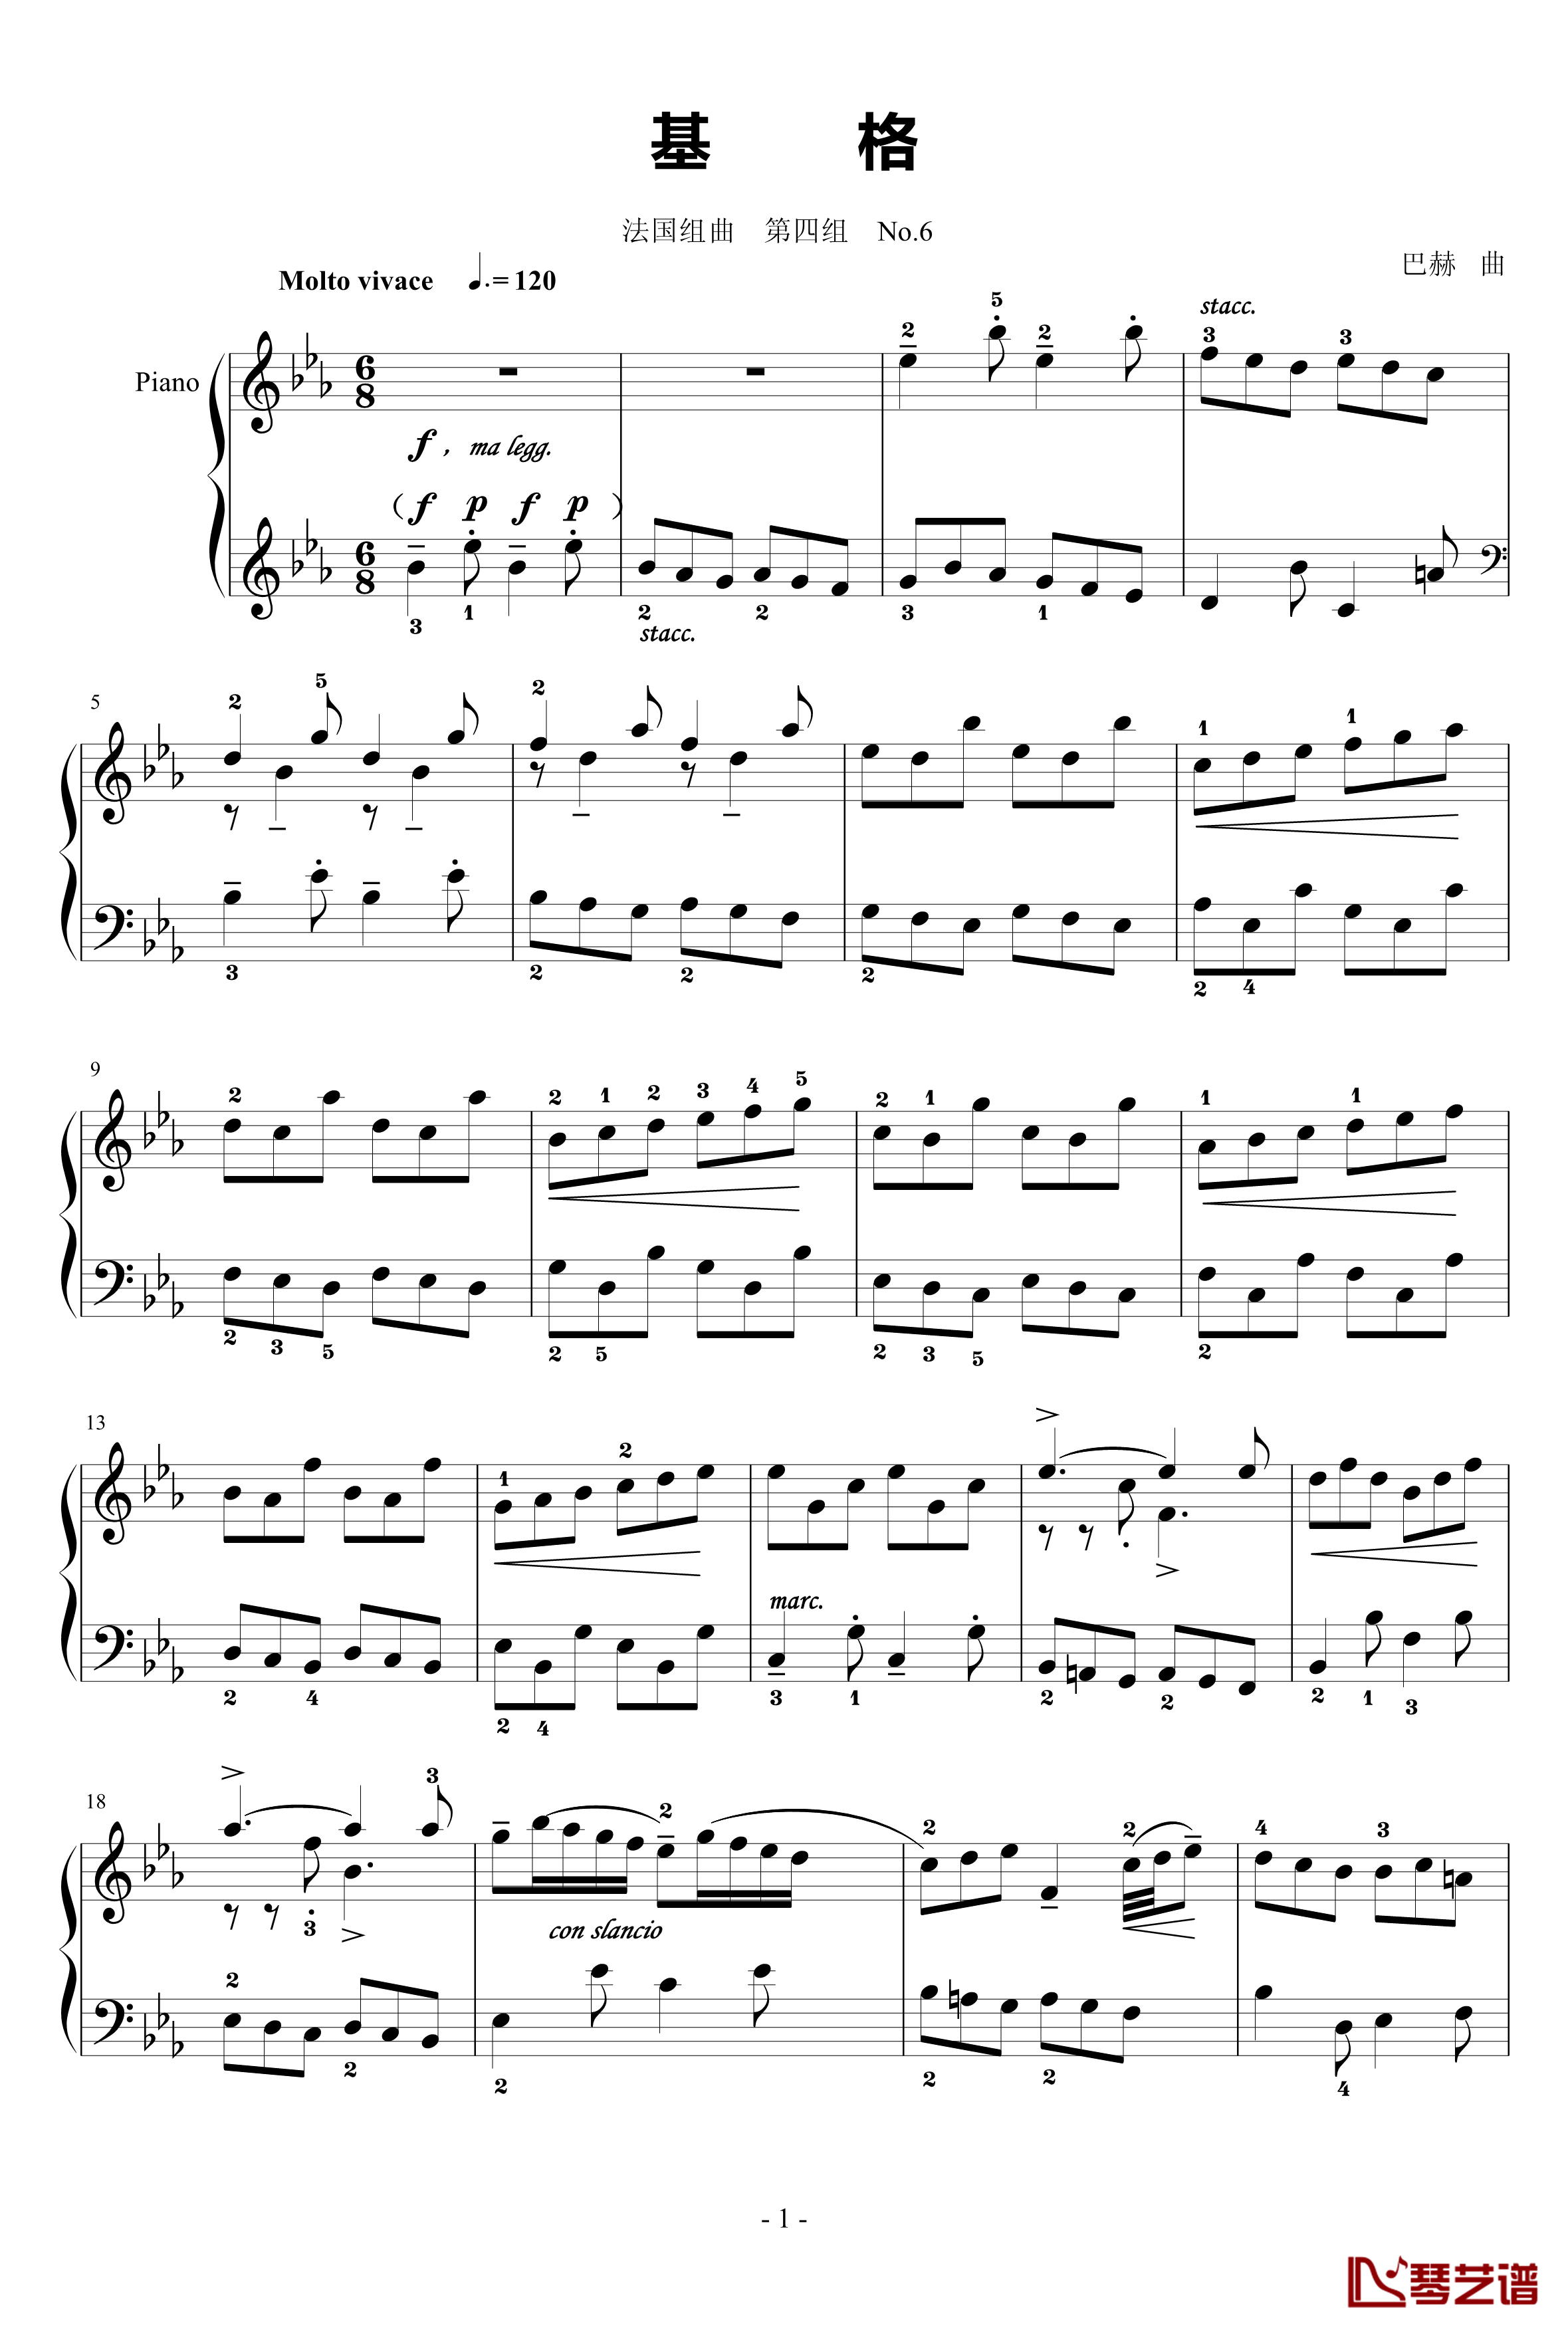 基格钢琴谱-法国组曲四 No.6-奥芬巴赫1